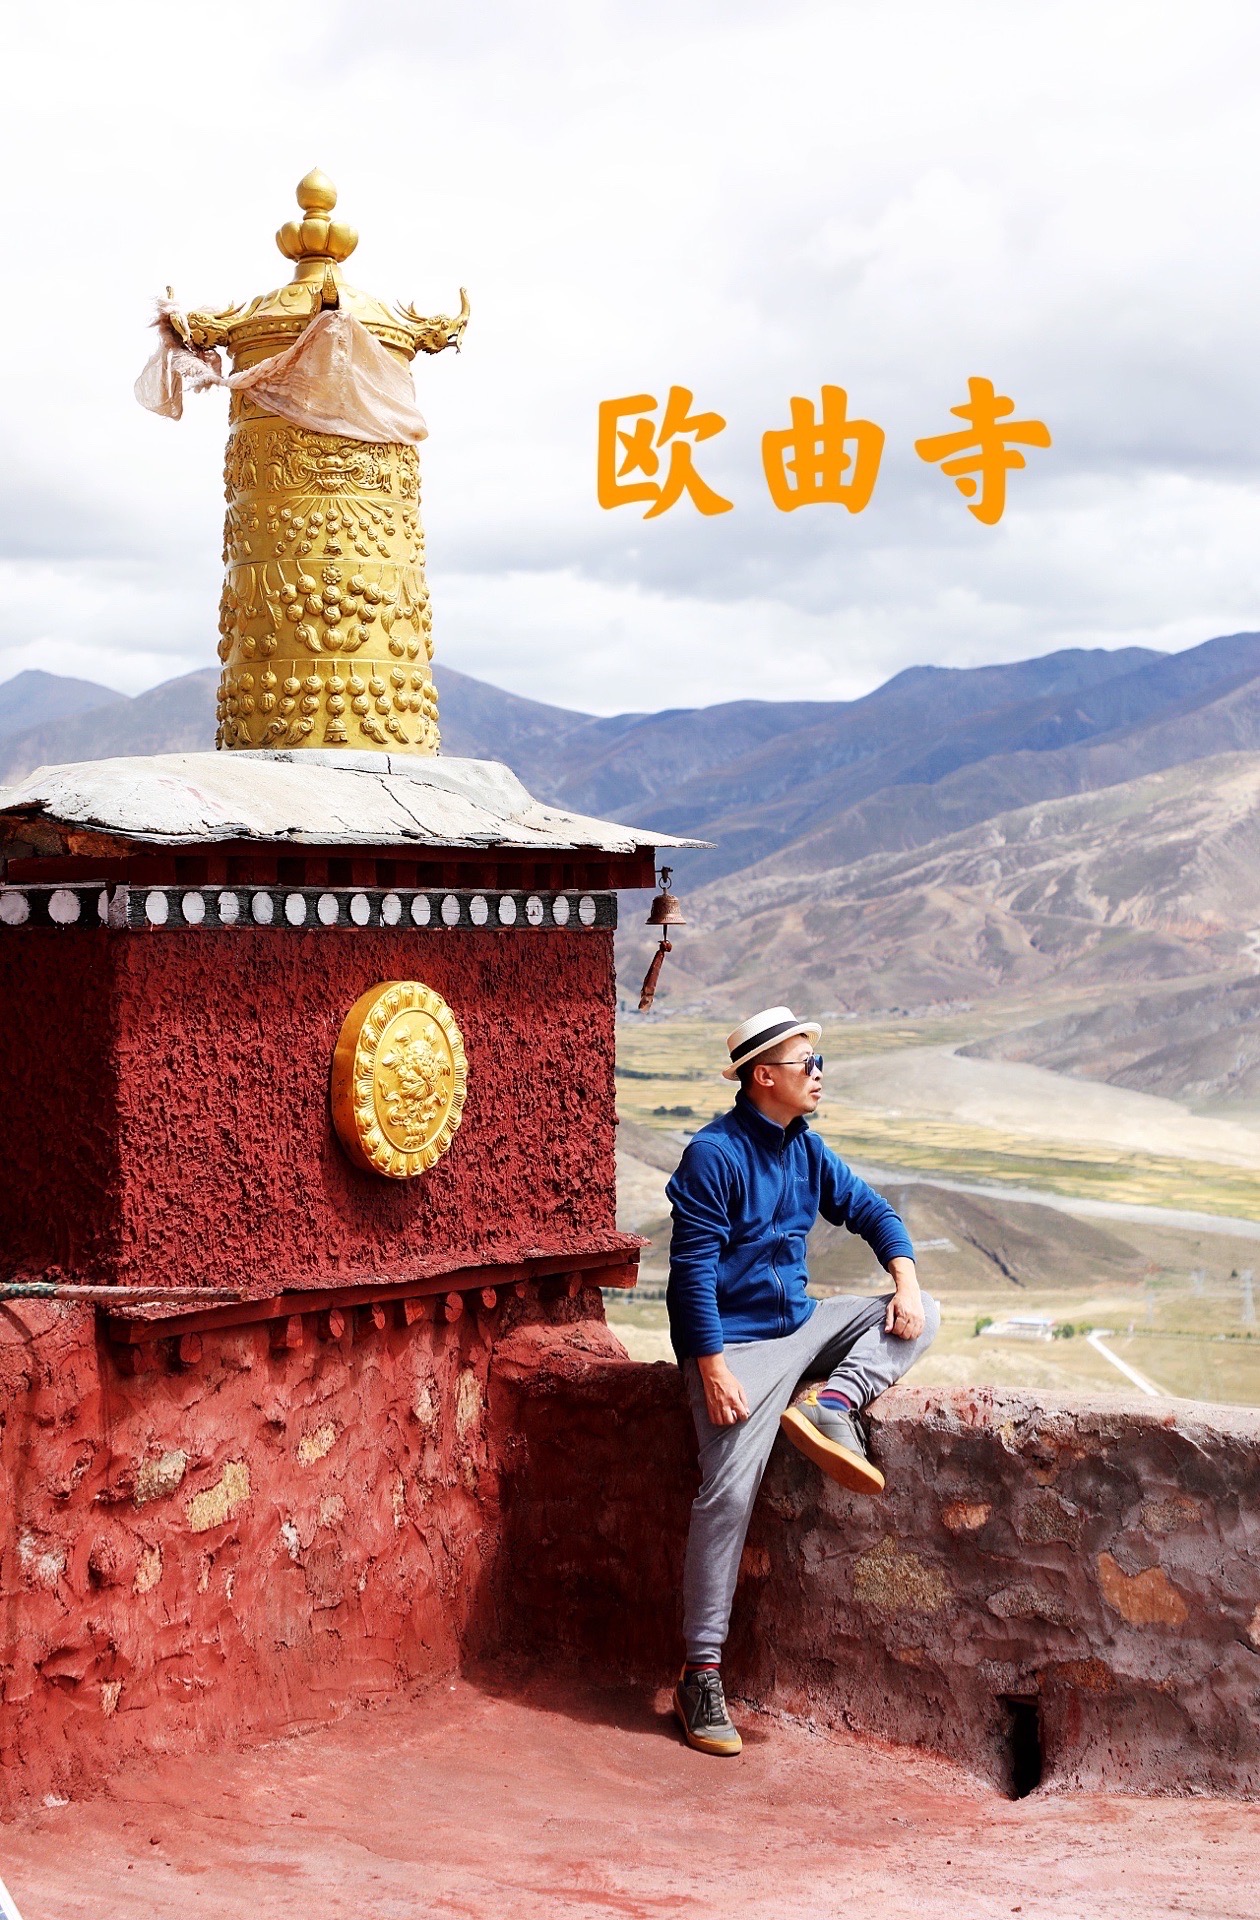 谢通门县南7公里处，原野中高高矗立着欧曲寺。  欧曲寺不大，寺里出了两位改革藏文语法做出过重大贡献的